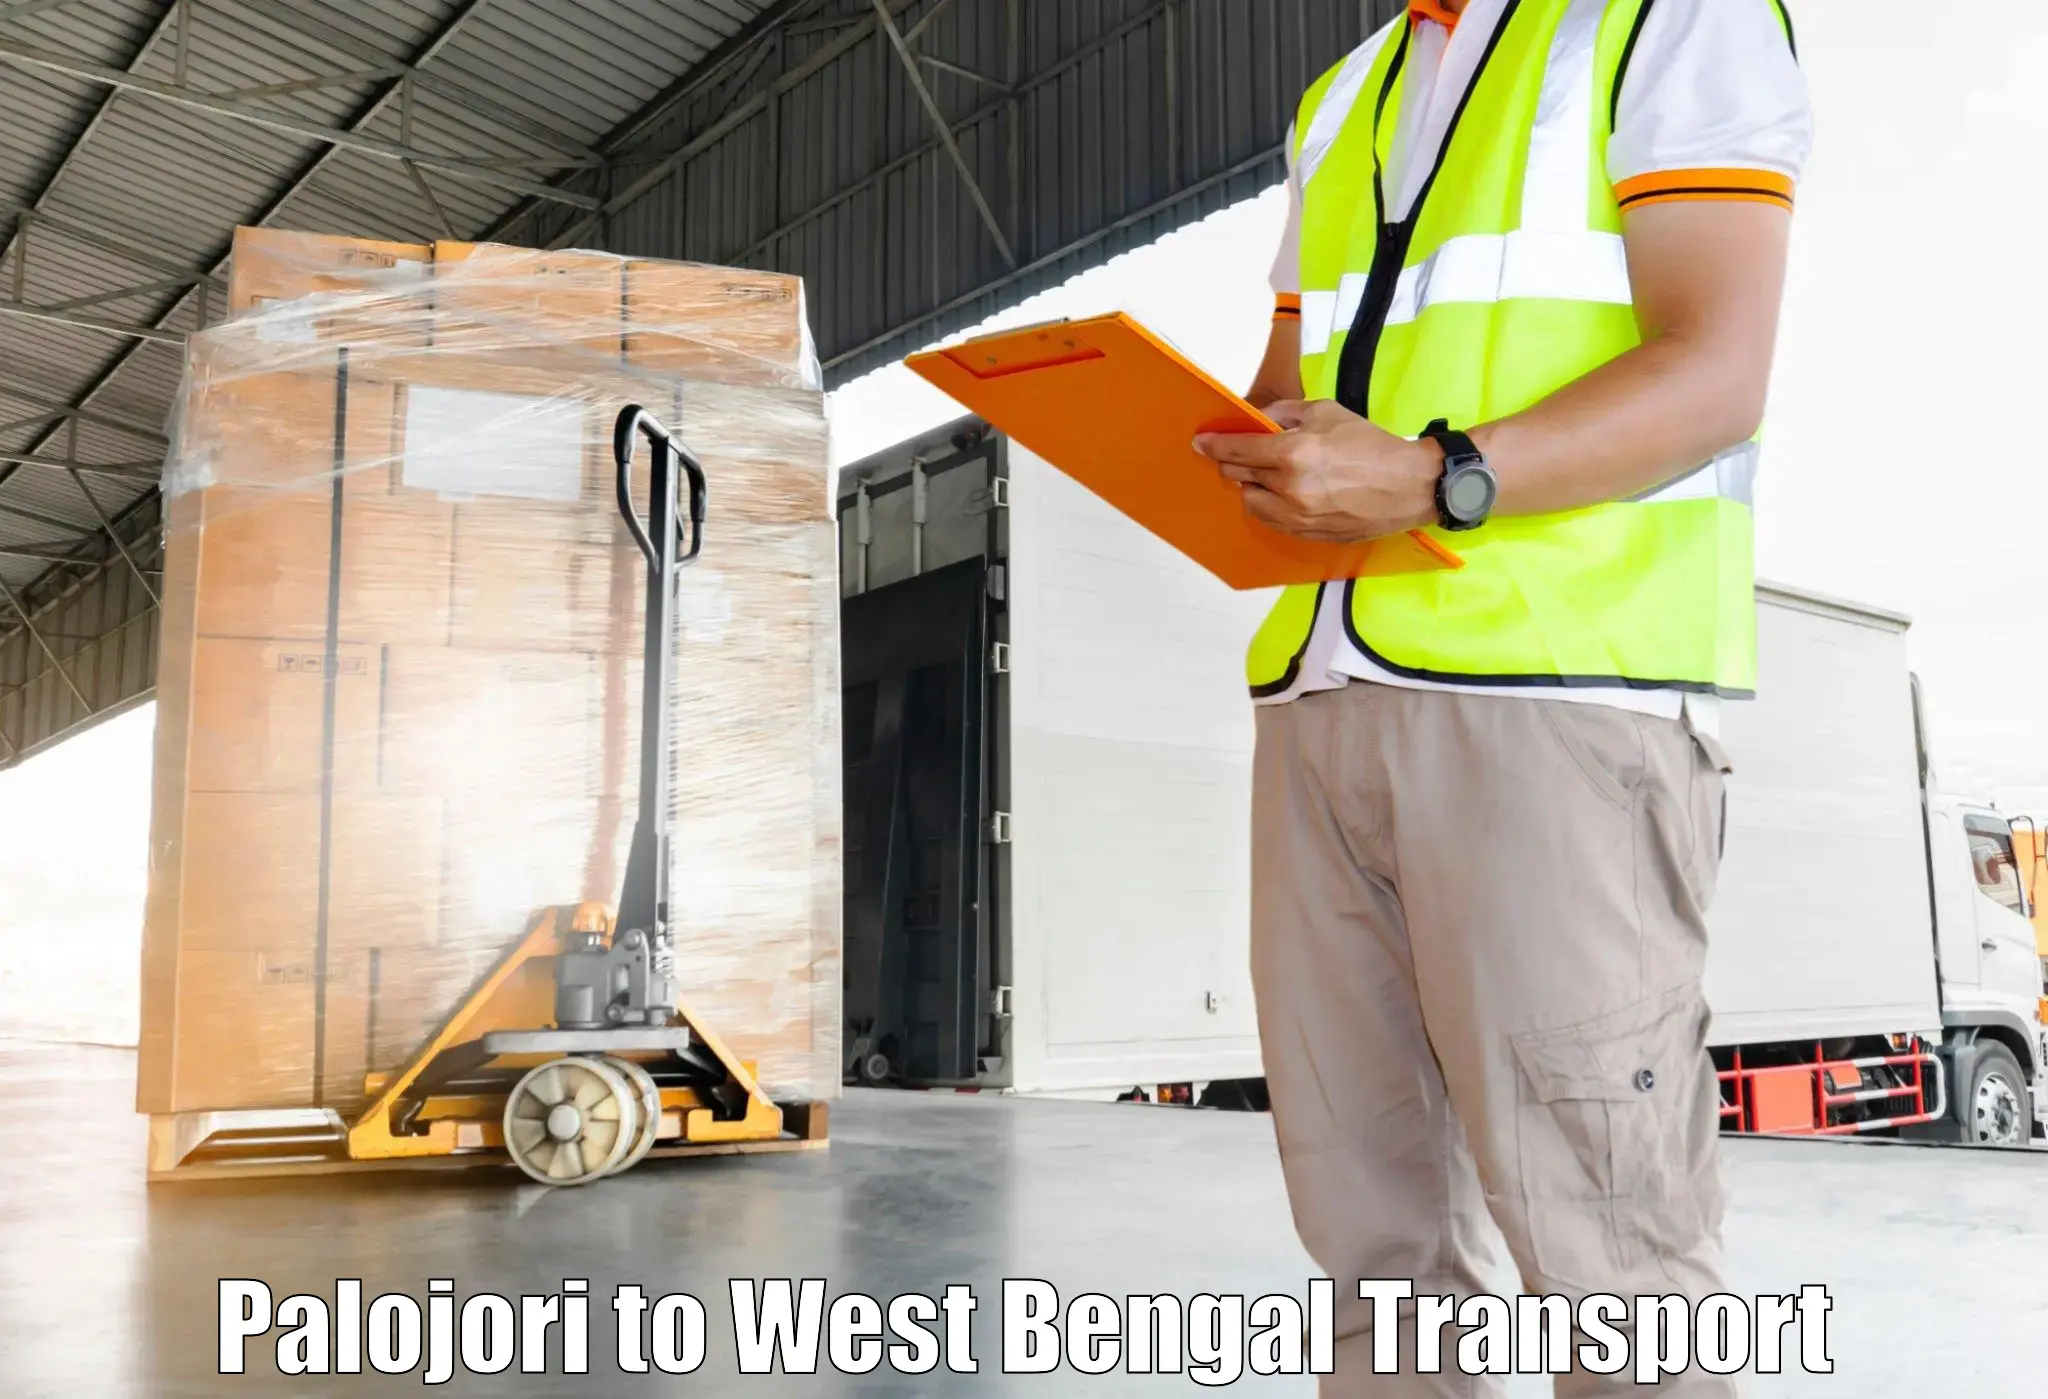 Logistics transportation services in Palojori to Burdwan